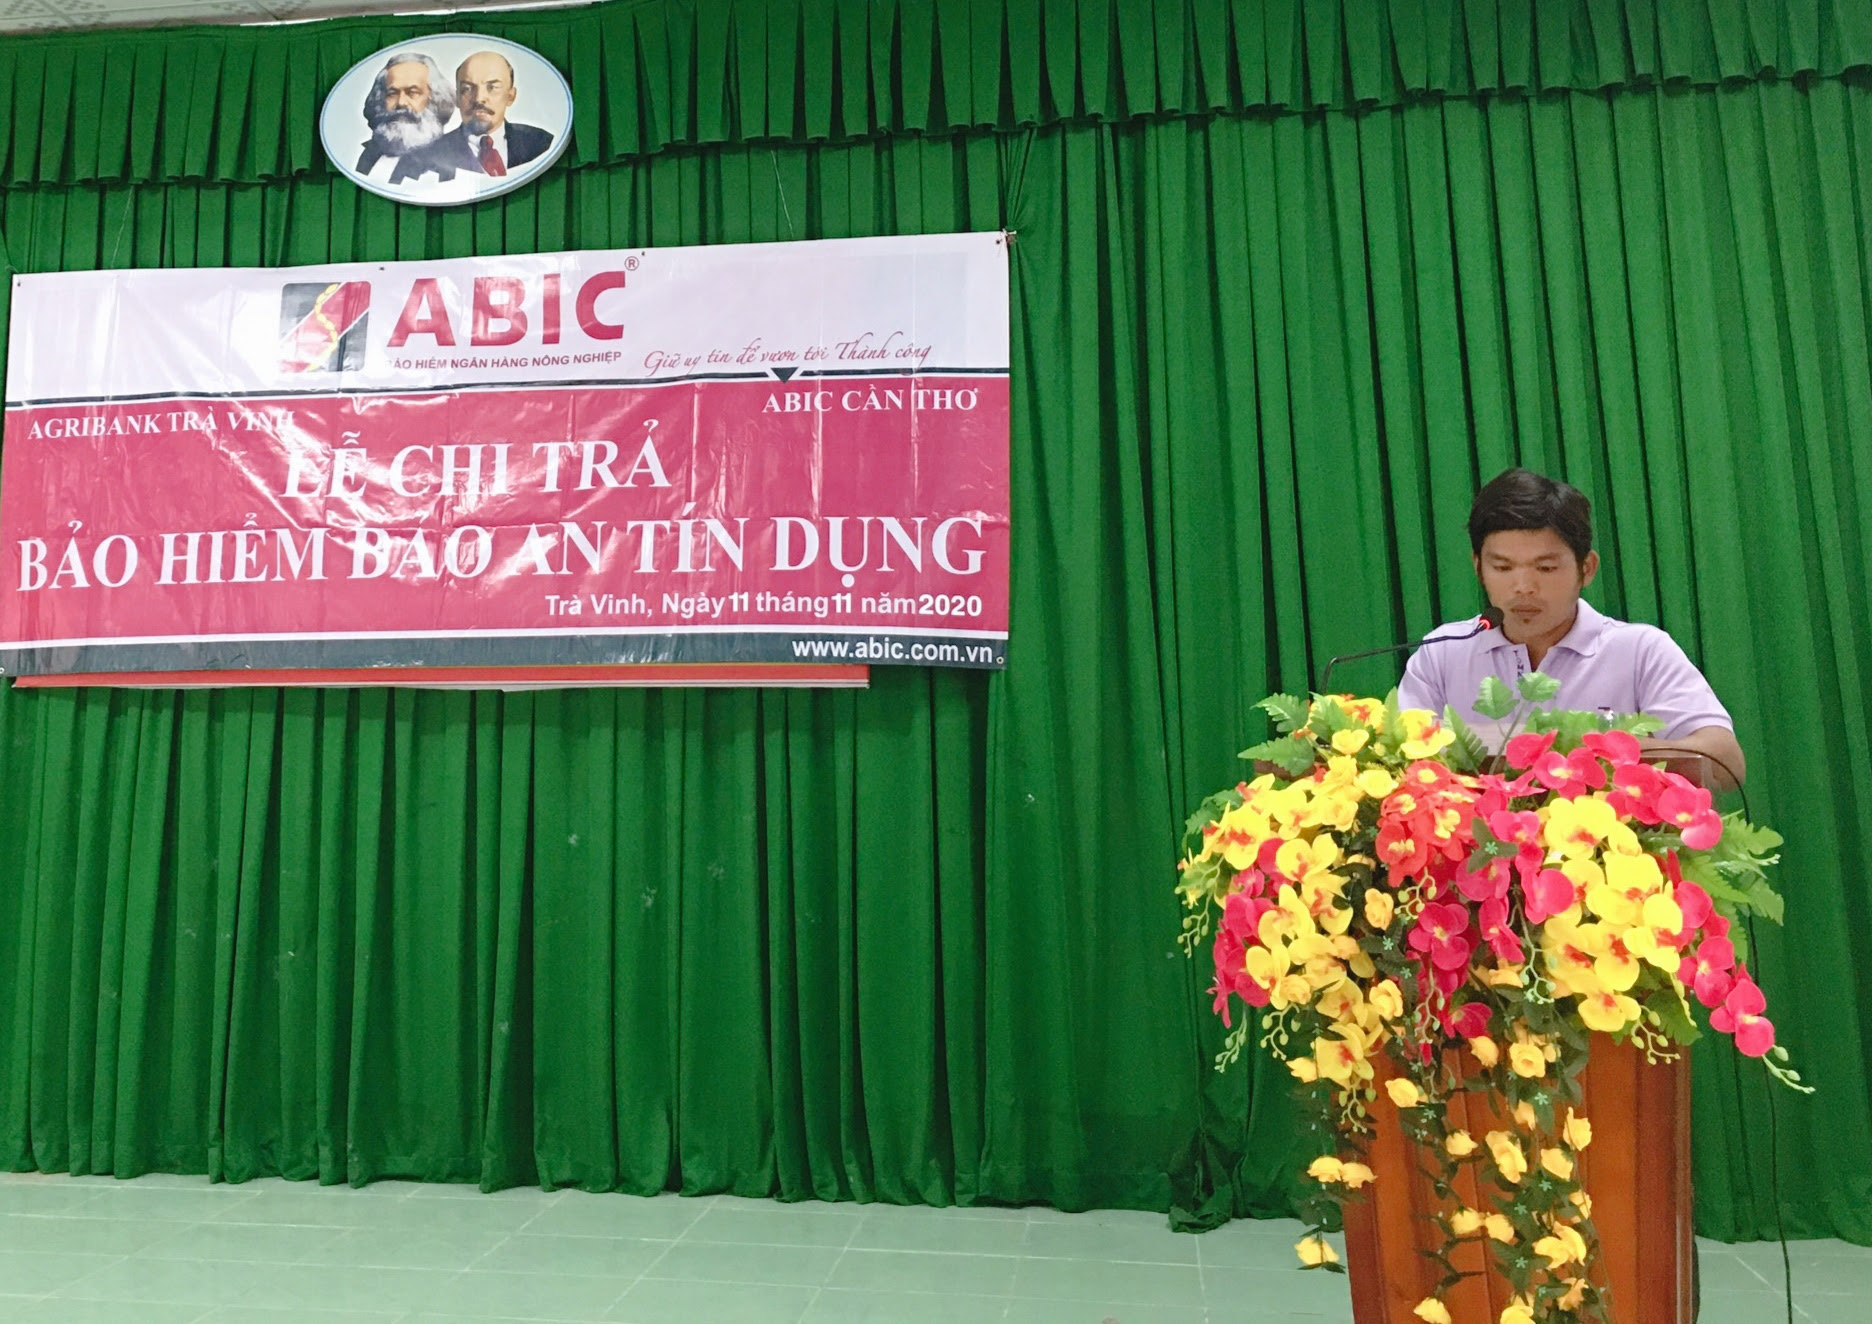 Trà Vinh: Agribank huyện Trà Cú chi trả quyền lợi Bảo hiểm Bảo an tín dụng cho khách hàng - Ảnh 3.